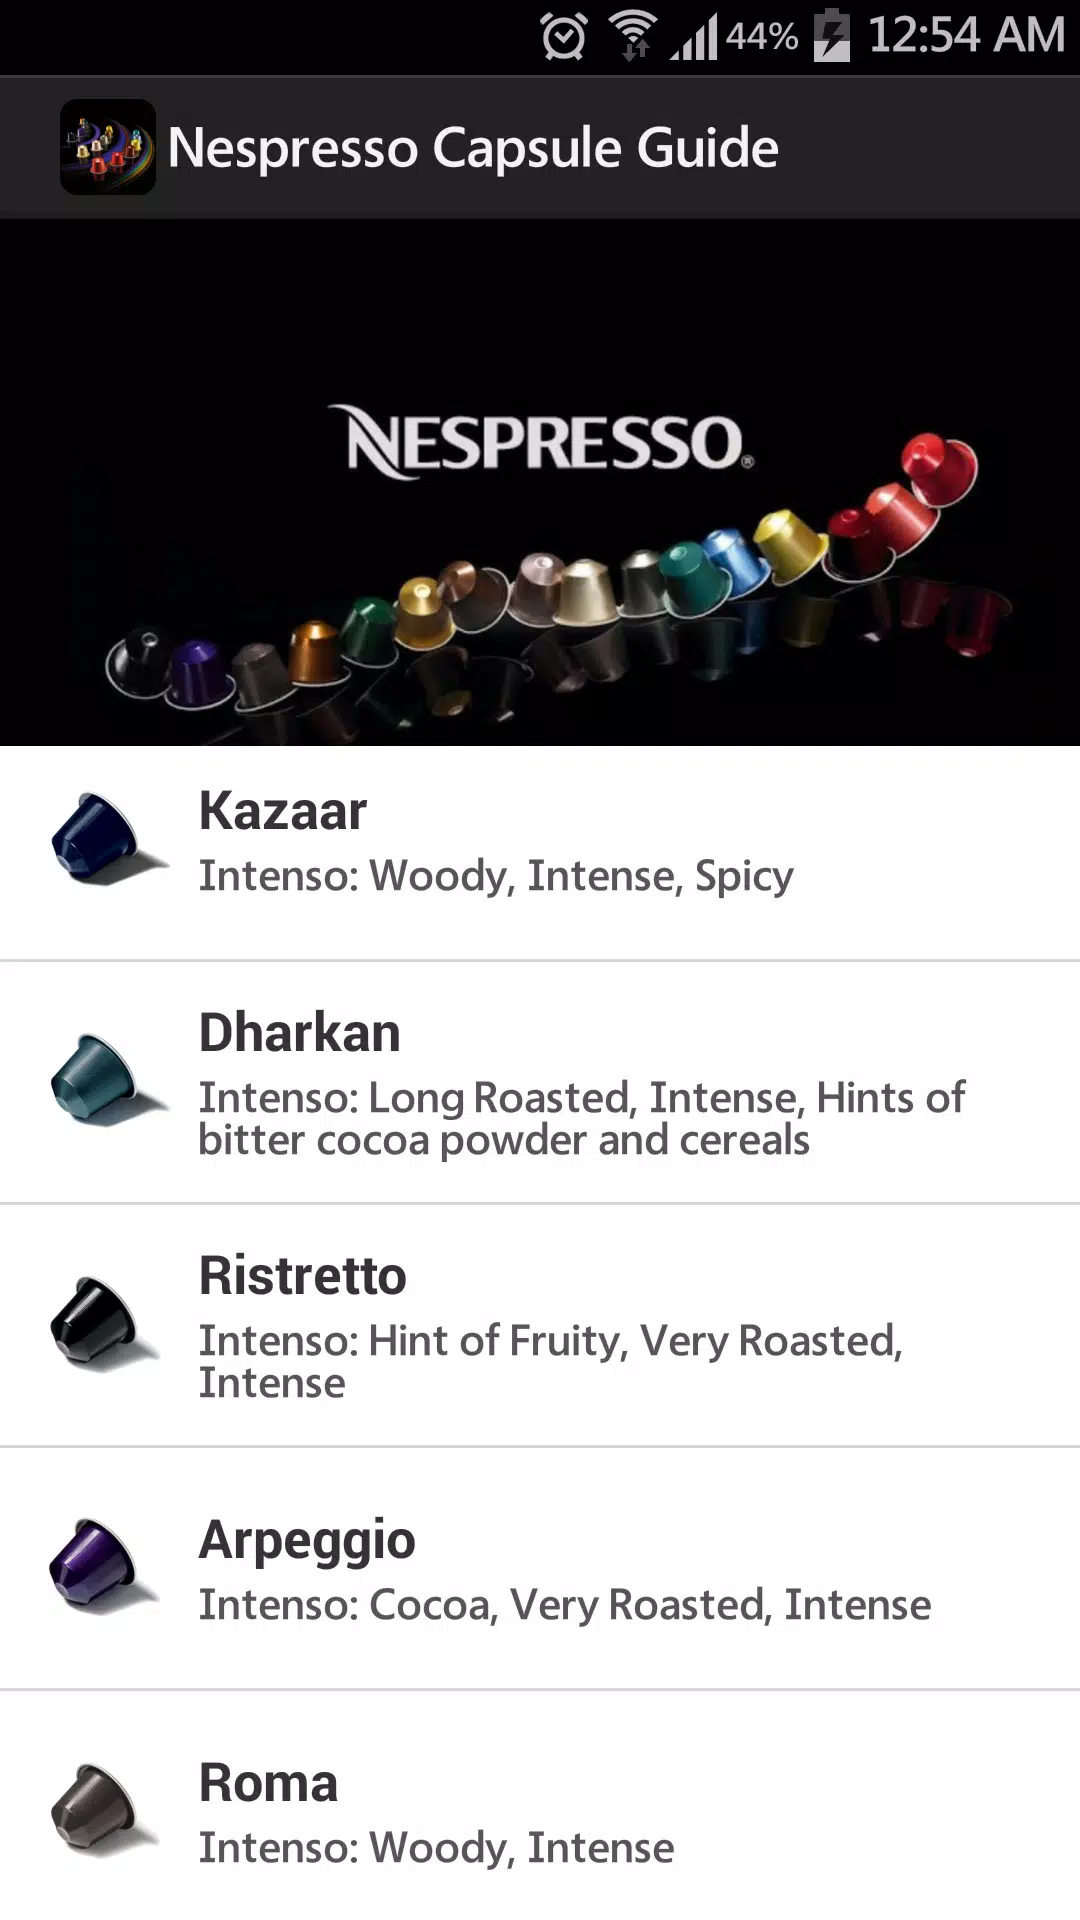 Nespresso Capsule Guide APK for